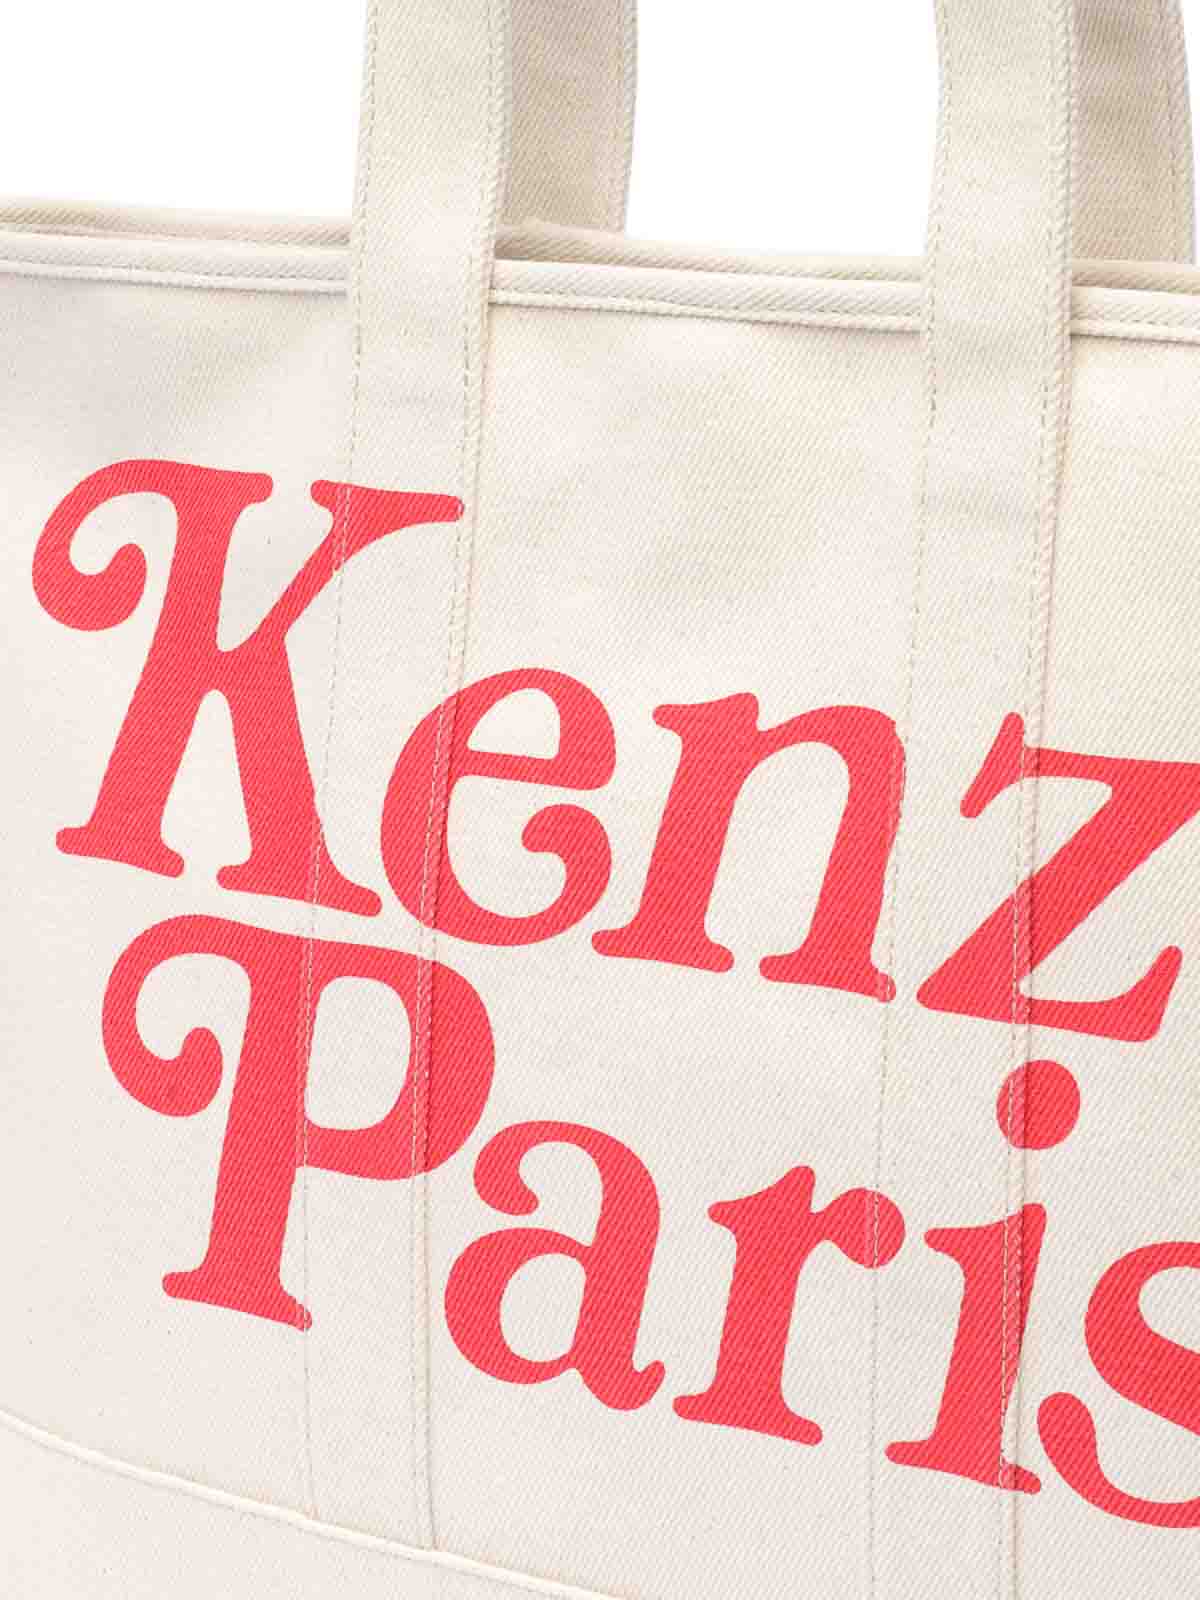 Shop Kenzo Paris Tote Bag In Beige